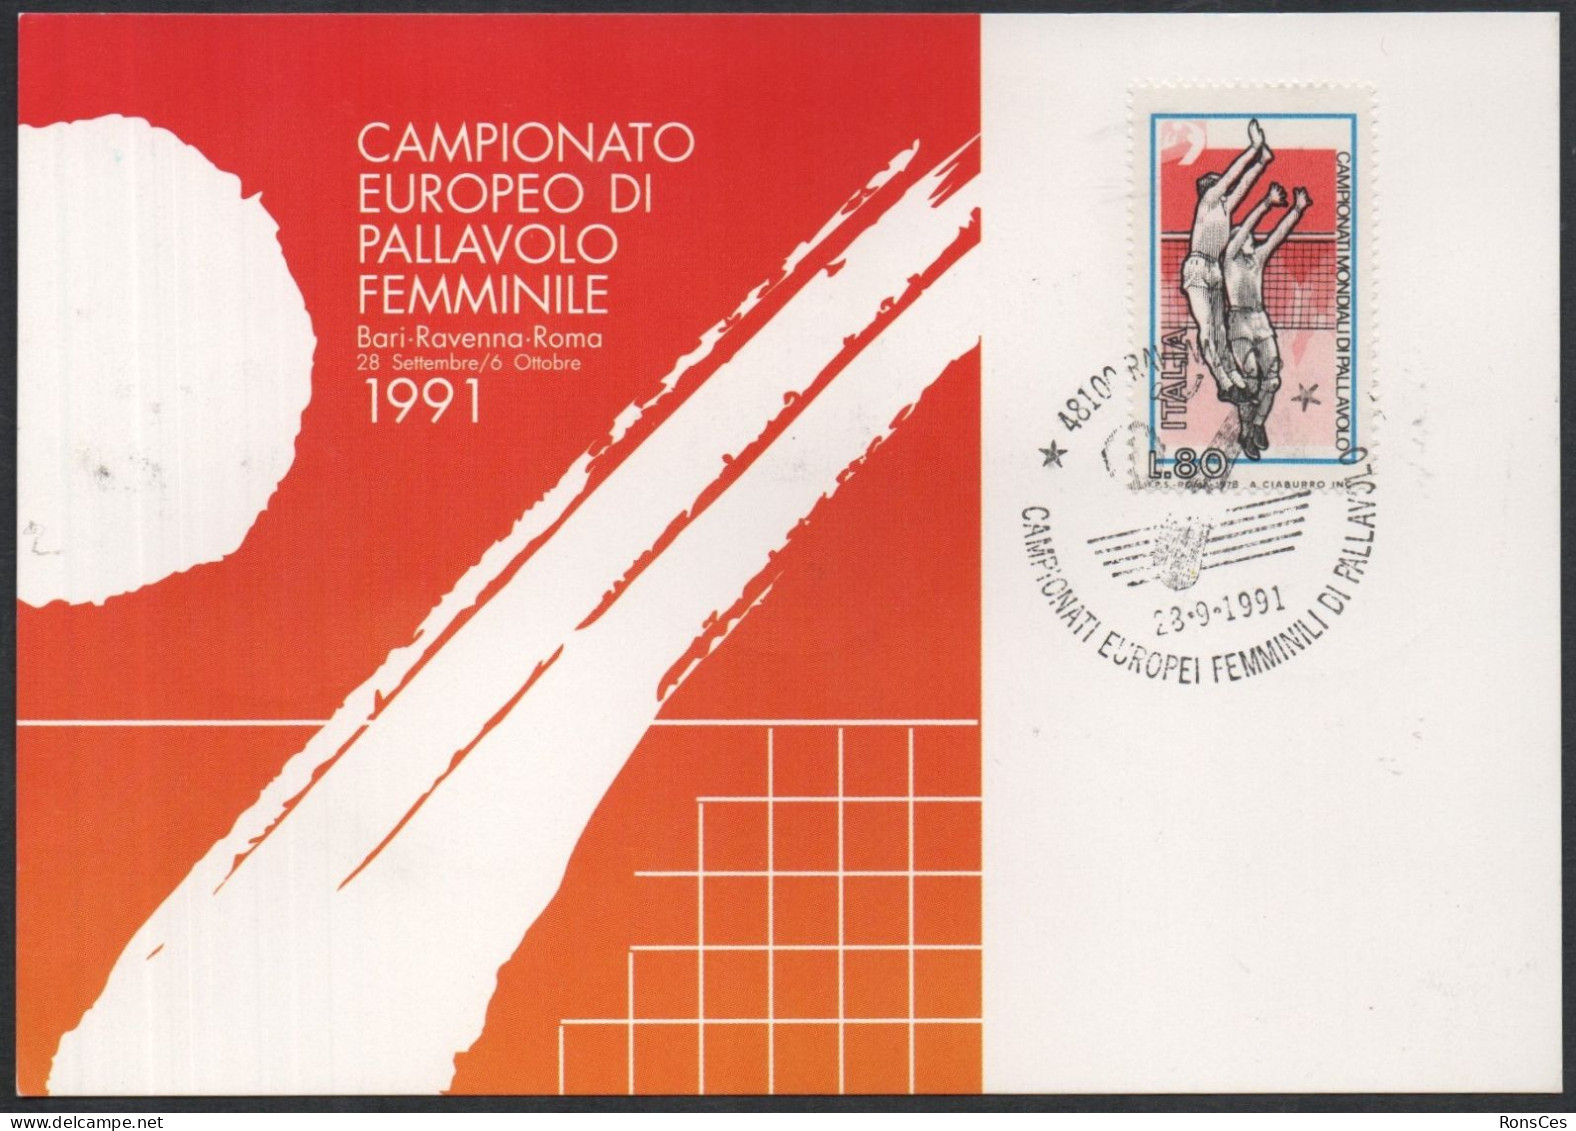 VOLLEYBALL - ITALIA RAVENNA 1991 - CAMPIONATO EUROPEO FEMMINILE DI PALLAVOLO - CARTOLINA UFFICIALE - A - Volleyball